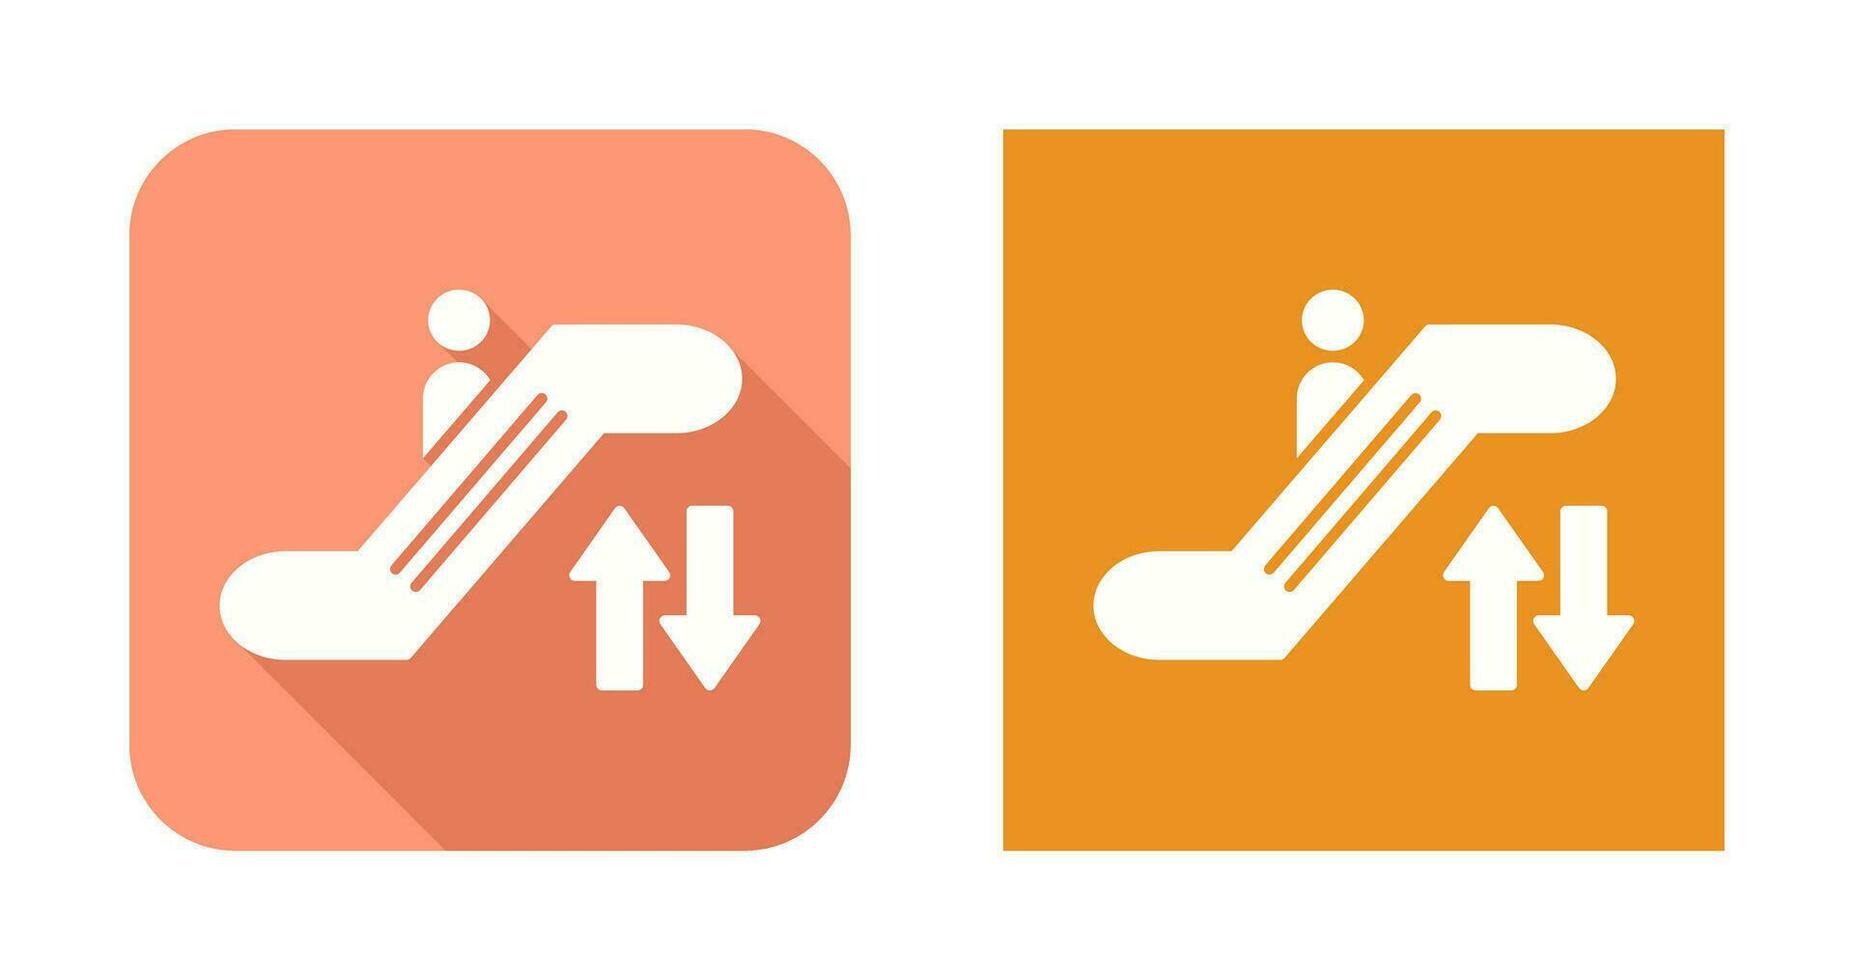 ícone de vetor de escada rolante